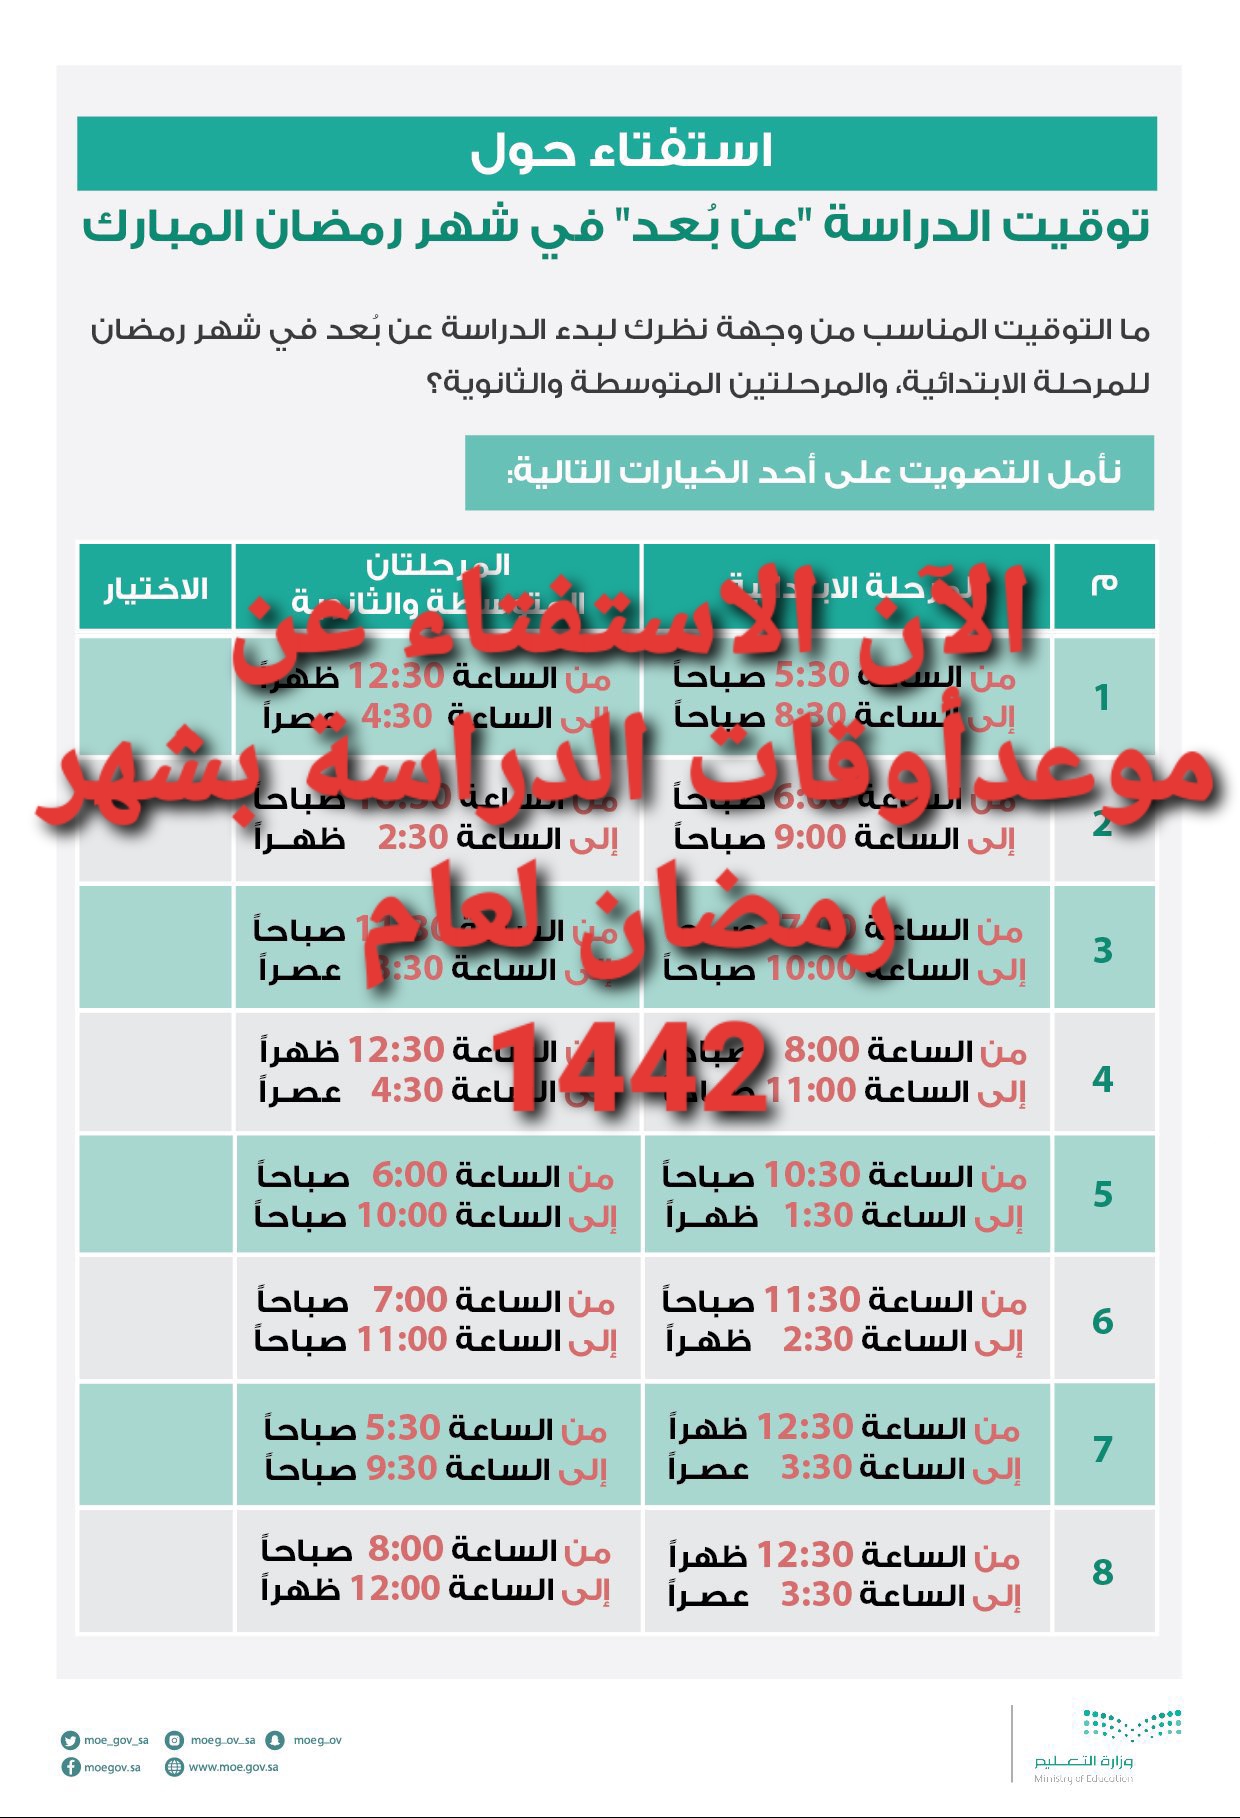 وزارة التعليم السعودية وموعد الدراسة في شهر رمضان ورابط التصويت 1442